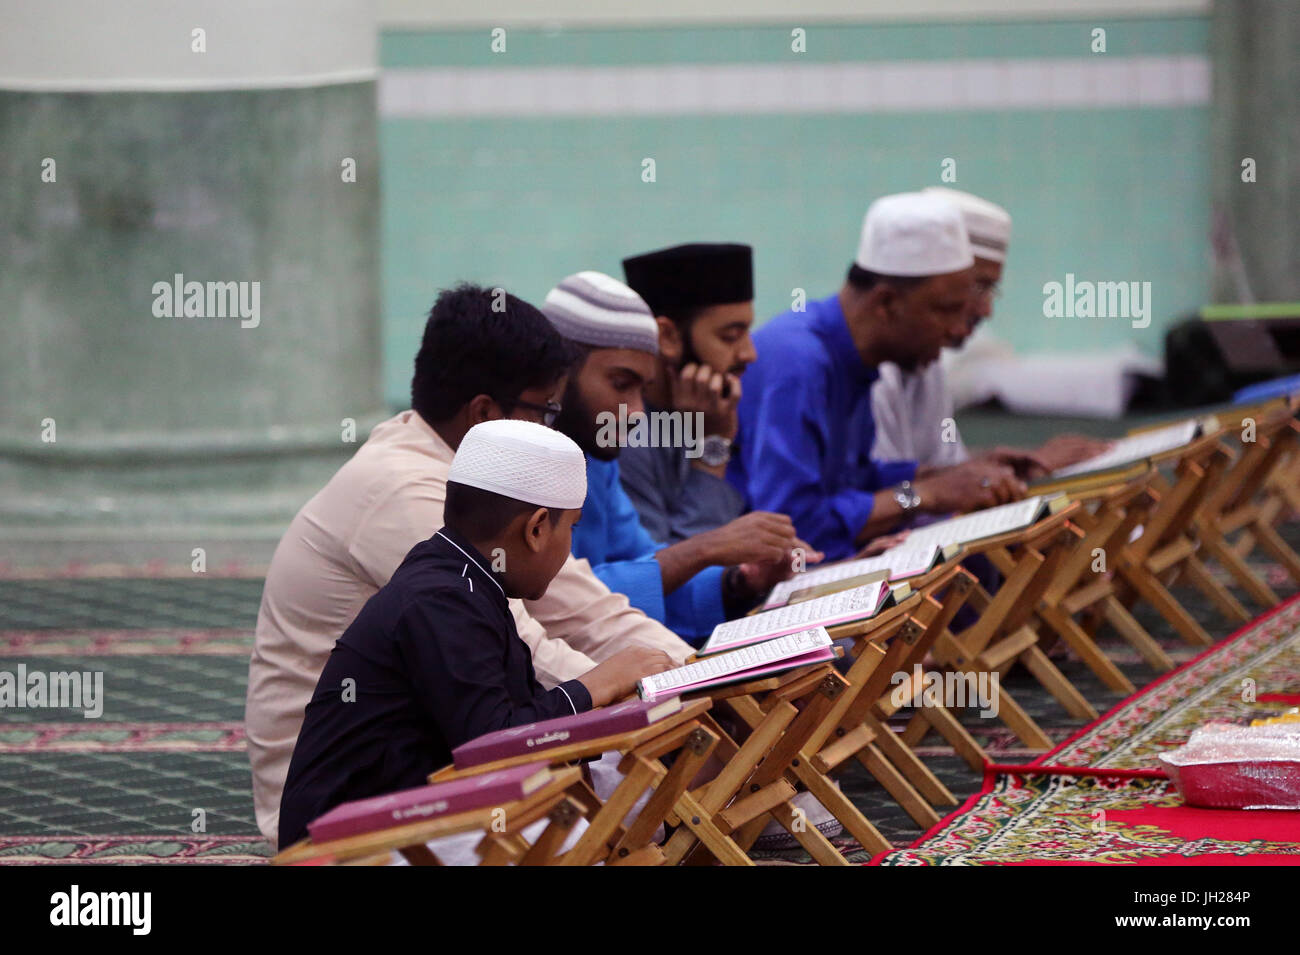 Masjid Jamae befindet sich eine der ältesten Moscheen in Singapur in Chinatown.  Muslime Kuran studieren.  Singapur. Stockfoto